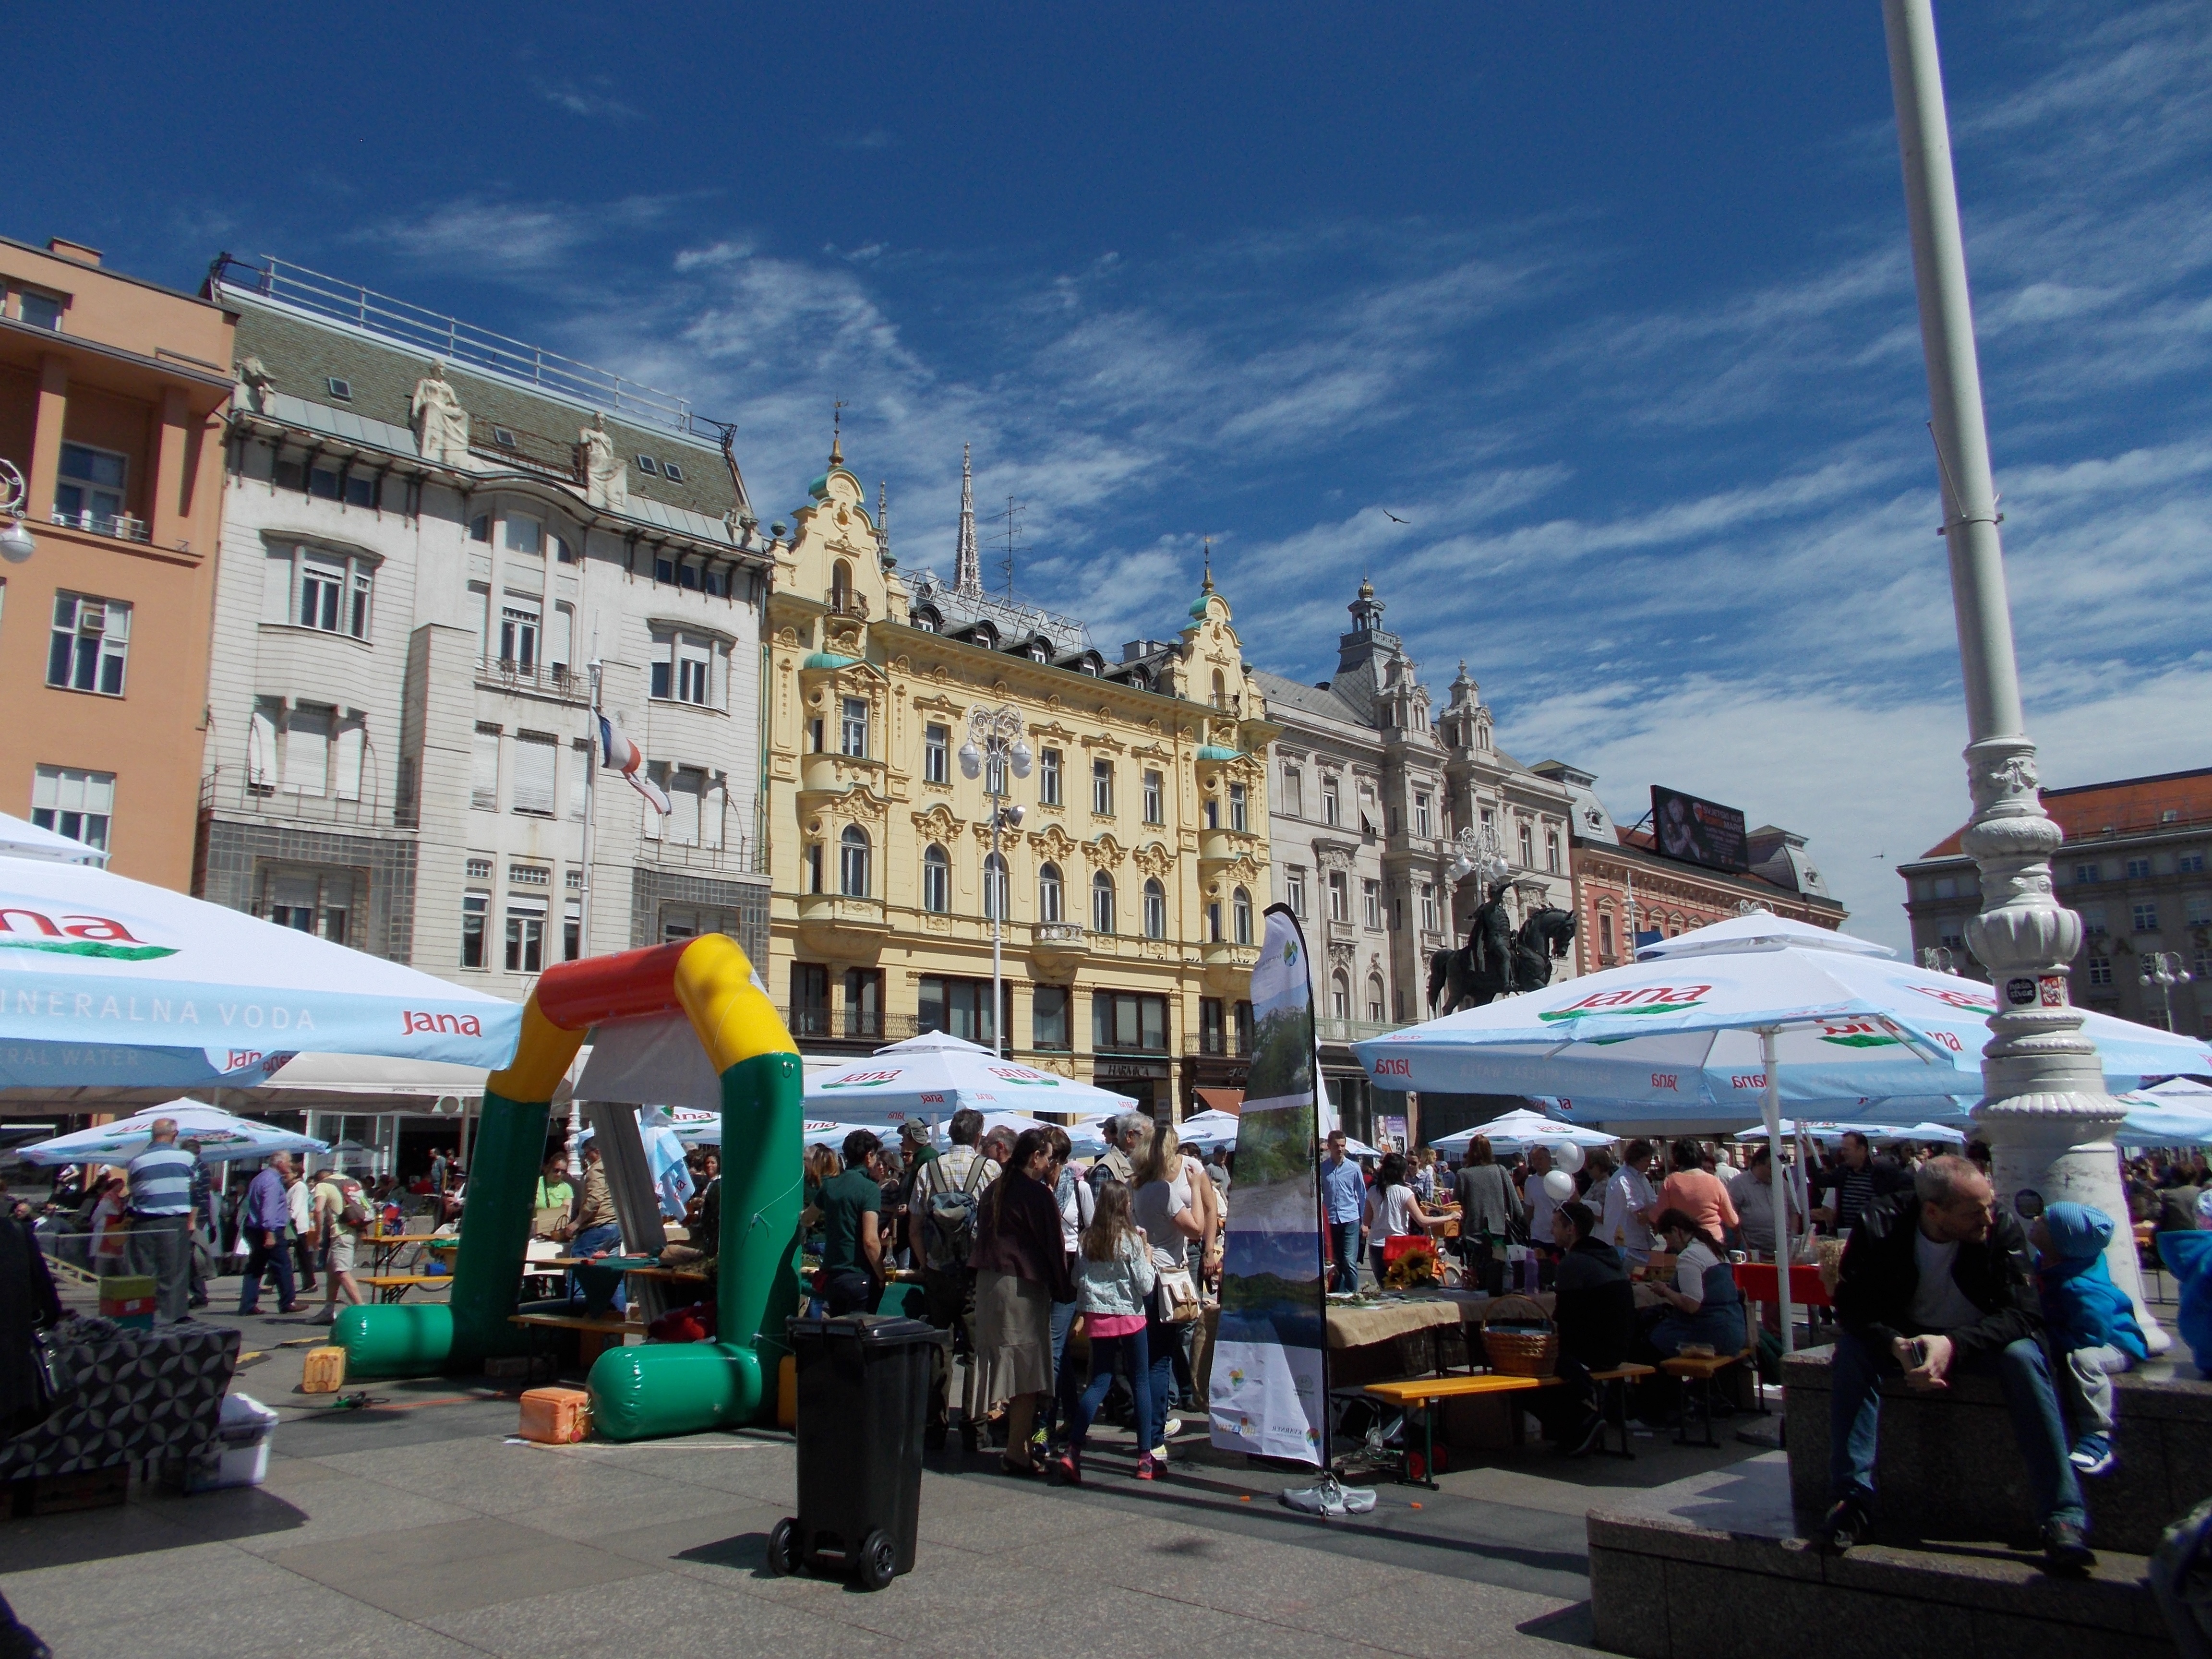 Ban Jelačić Square Zagreb